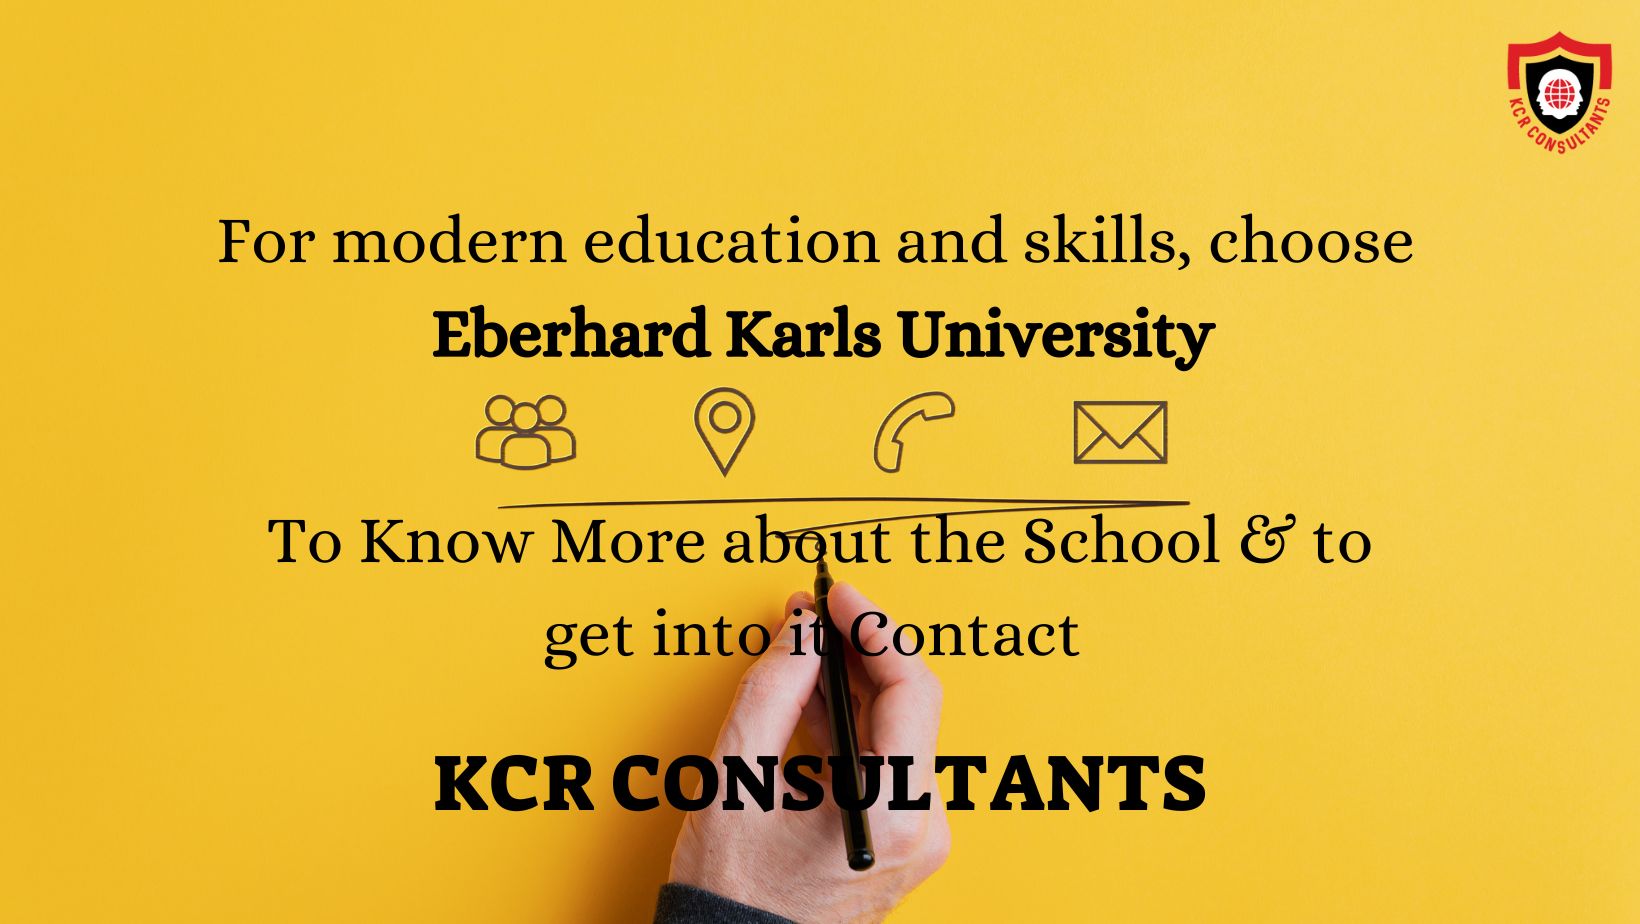 Eberhard Karls University of Tubingen - KCR CONSULTANTS - Contact us